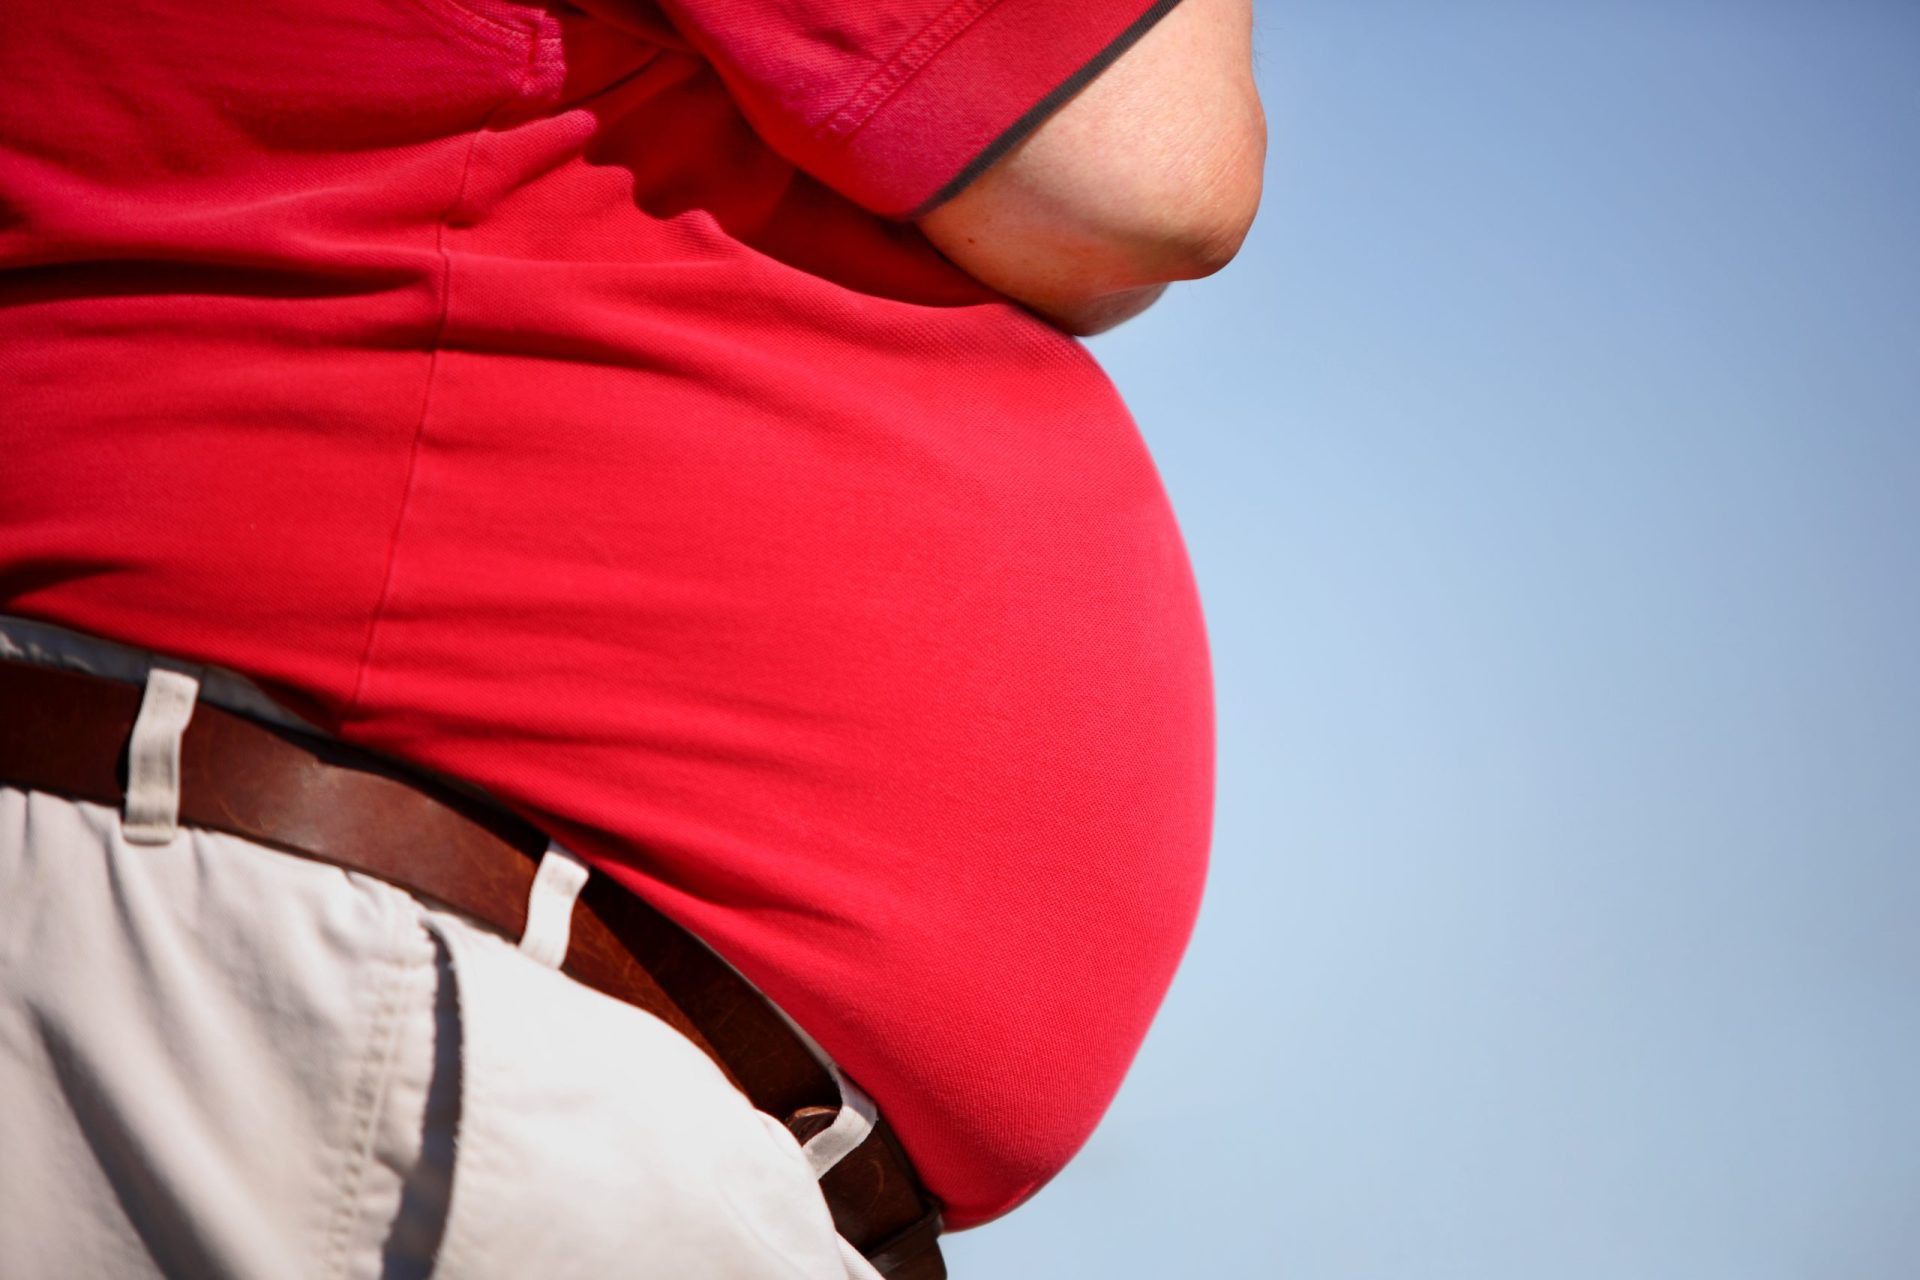 Só um em 10 portugueses tem consciência de que é obeso